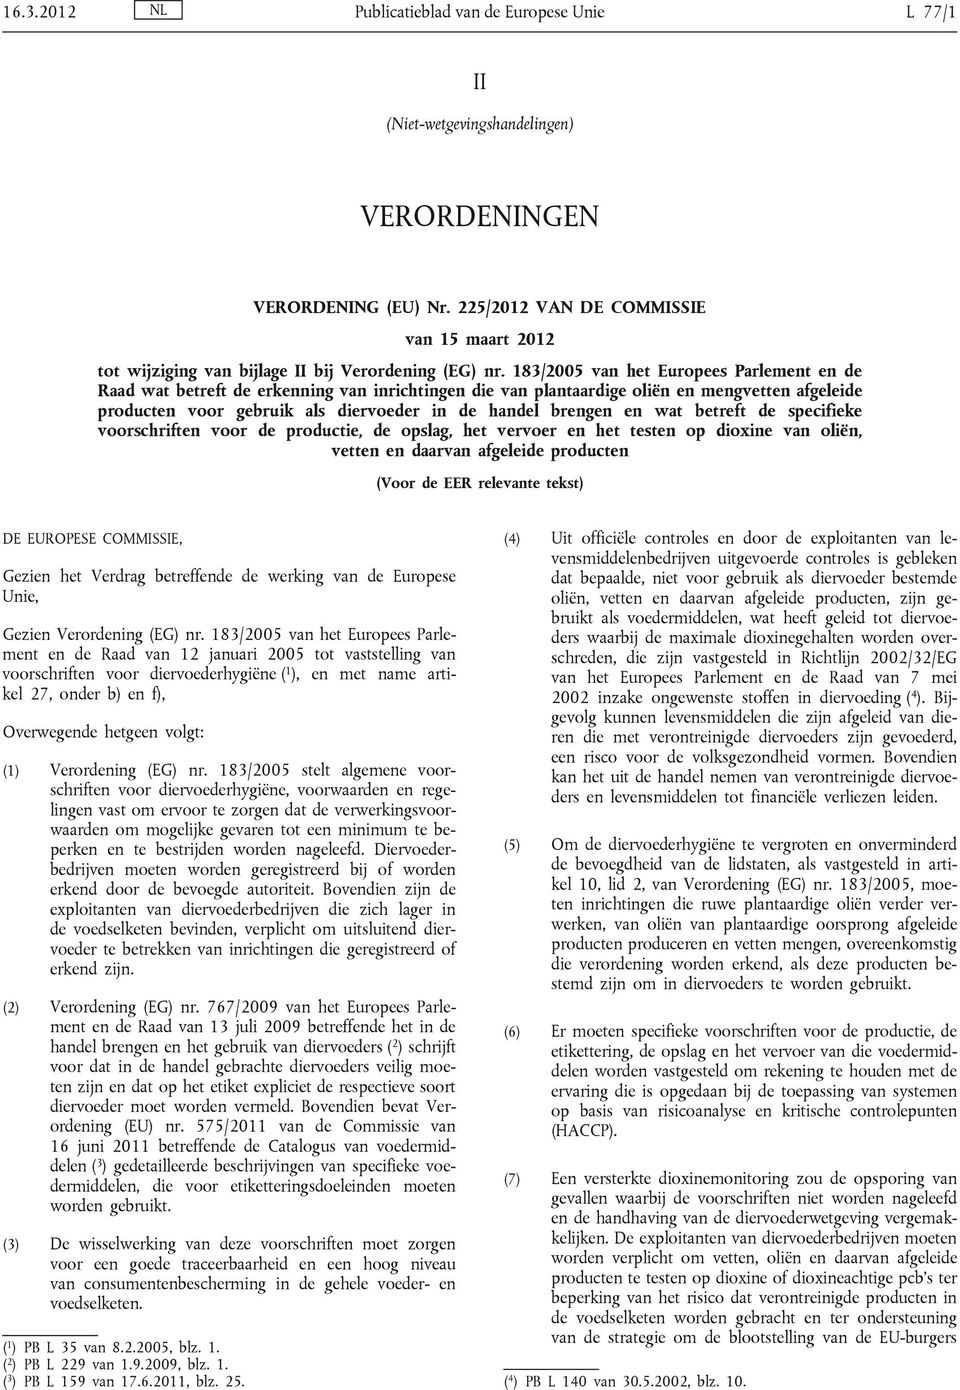 183/2005 van het Europees Parlement en de Raad wat betreft de erkenning van inrichtingen die van plantaardige oliën en mengvetten afgeleide producten voor gebruik als diervoeder in de handel brengen